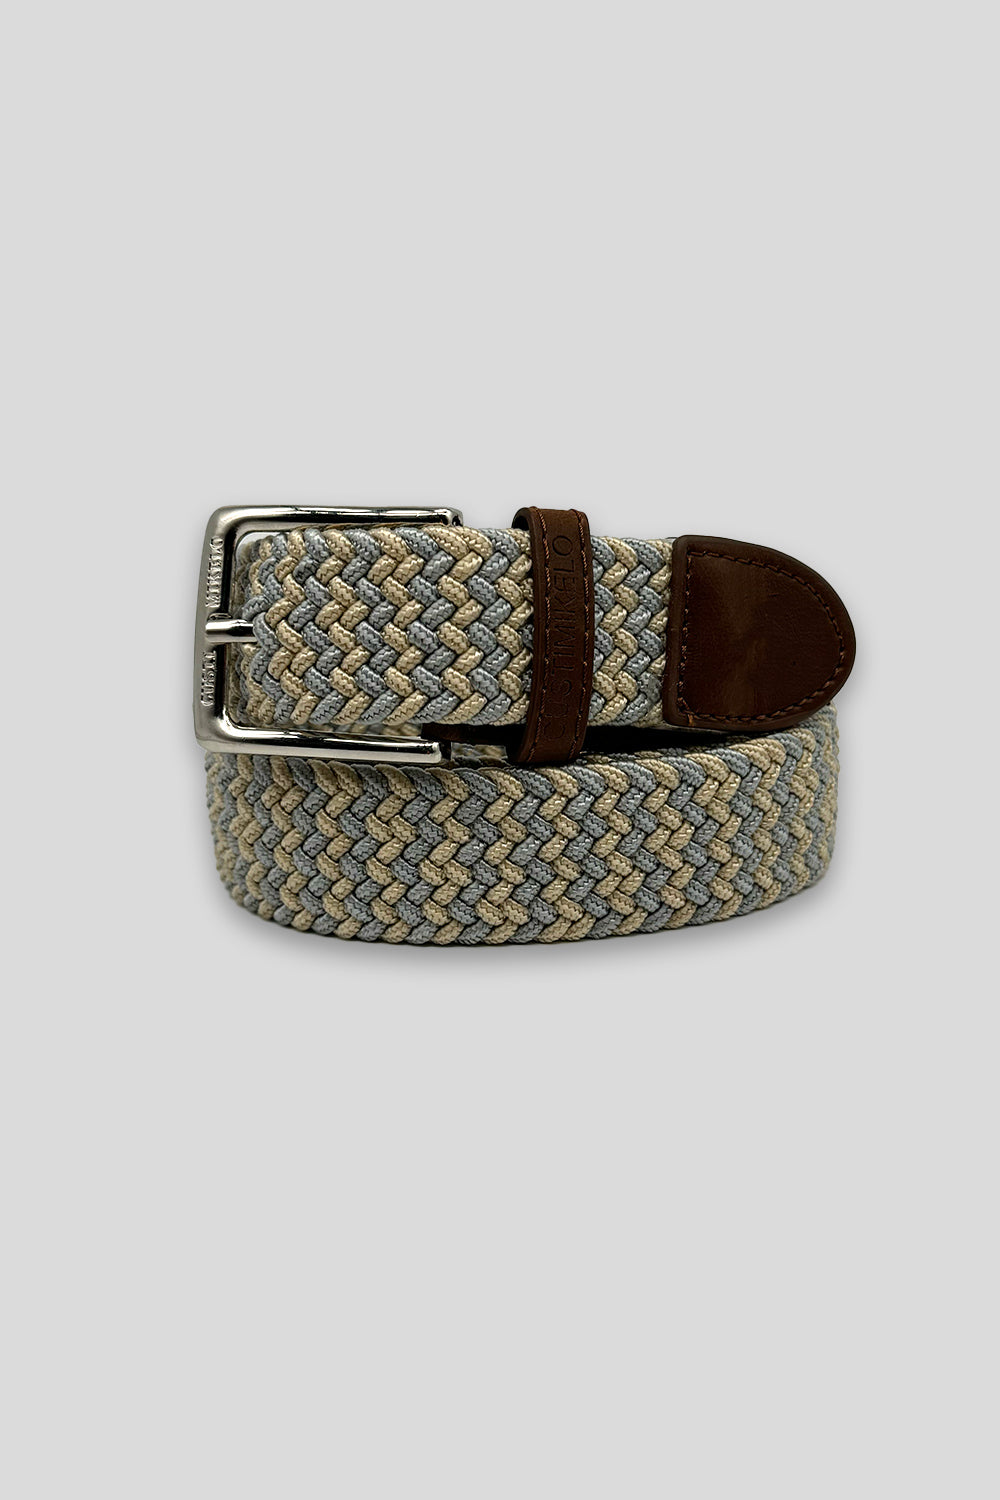 Cinturón trenzado gris/beige